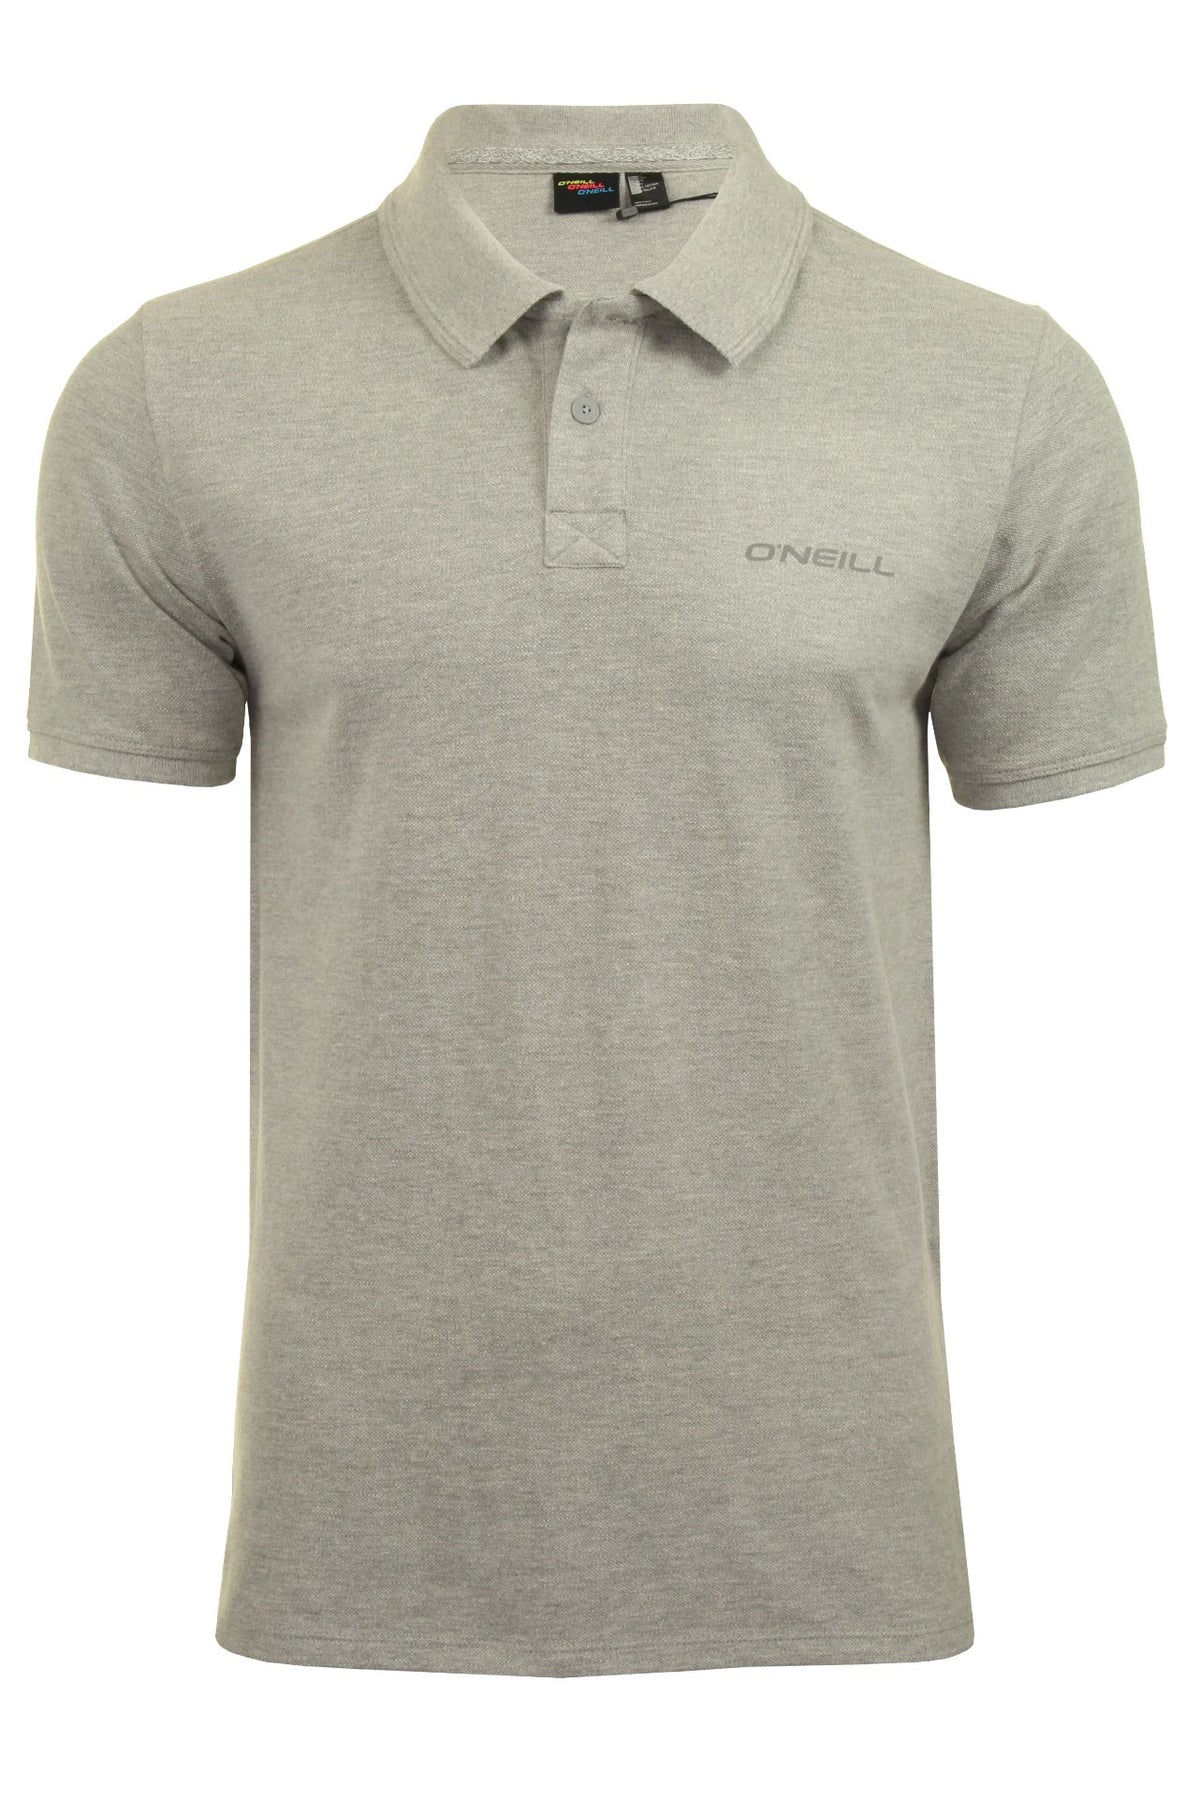 O'Neill Mens Pique Polo T-Shirt, 01, 9A2402, Silver Melee